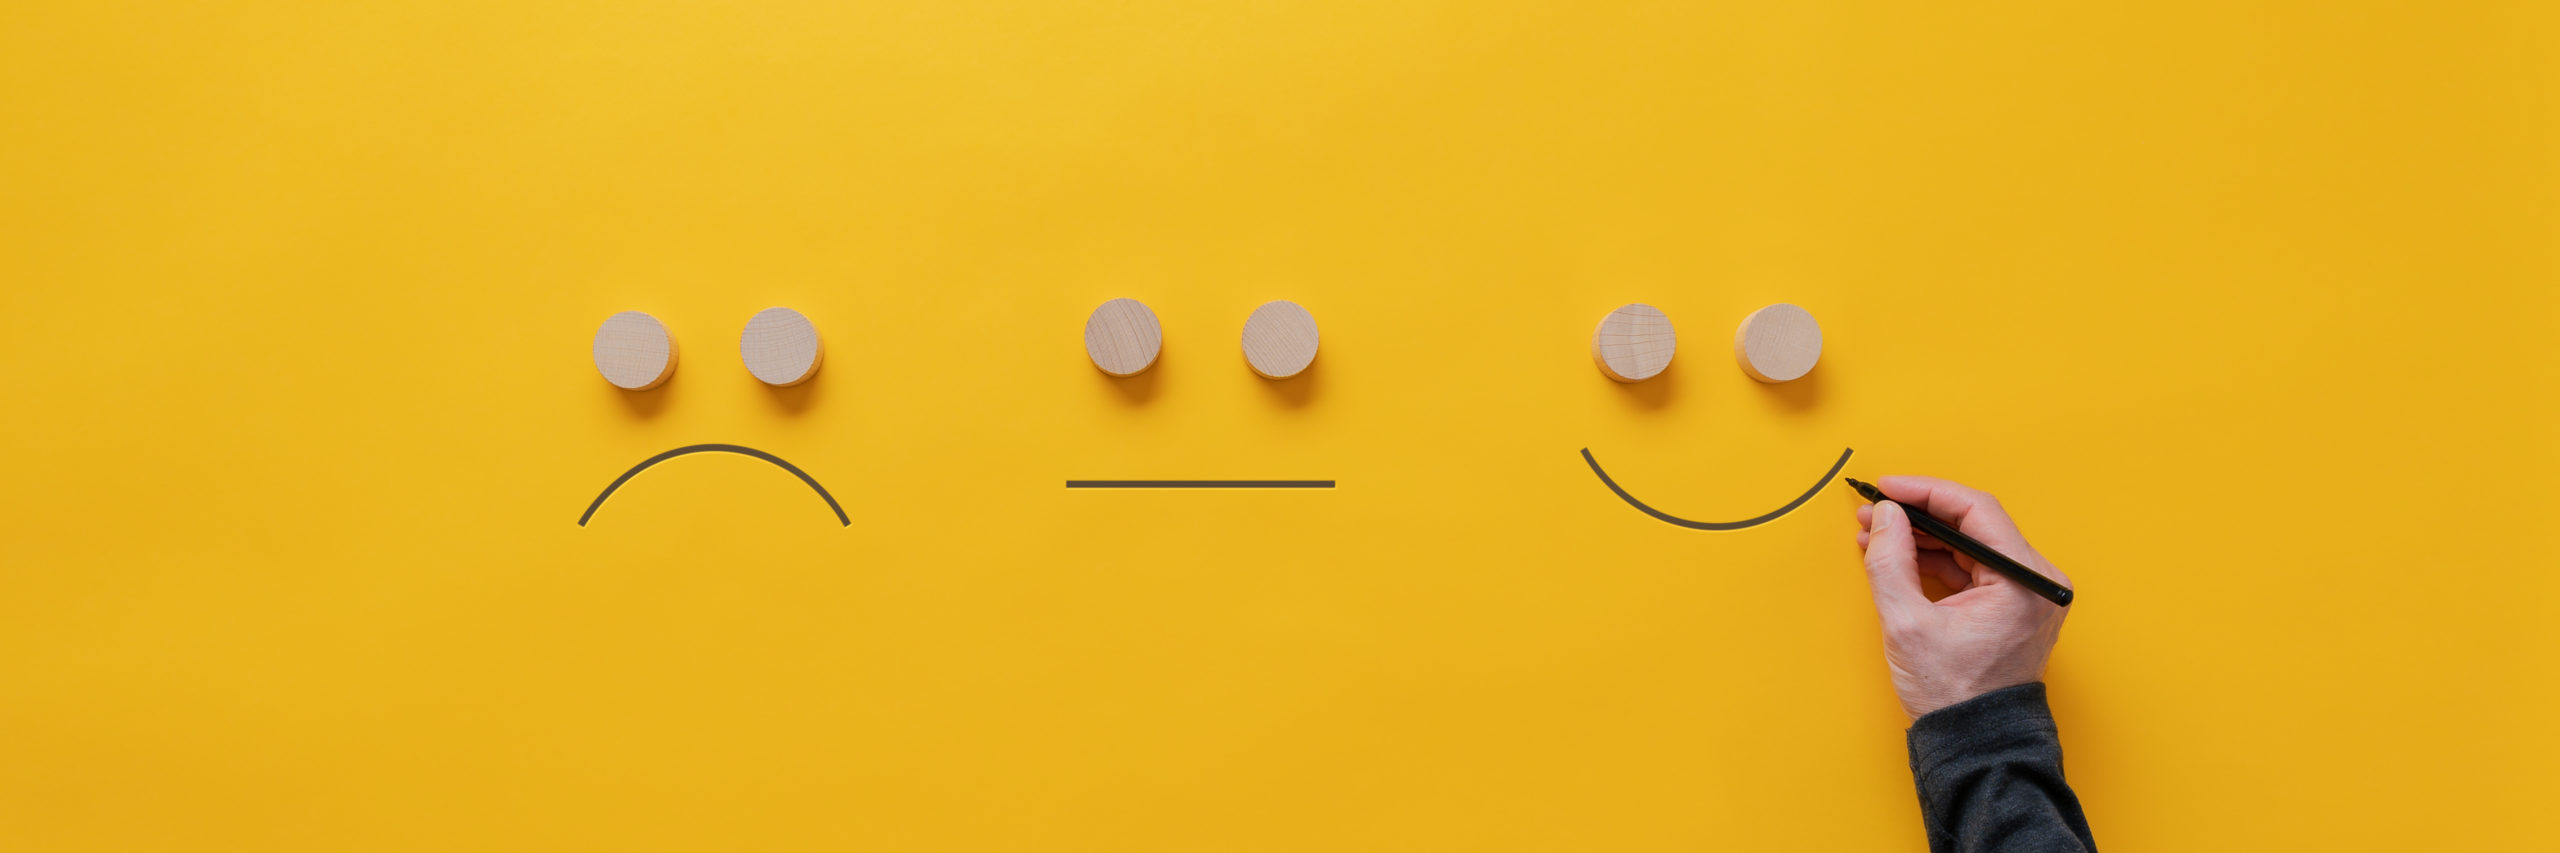 Lächelnde, traurige und neutrale Emojis, handgezeichnet.